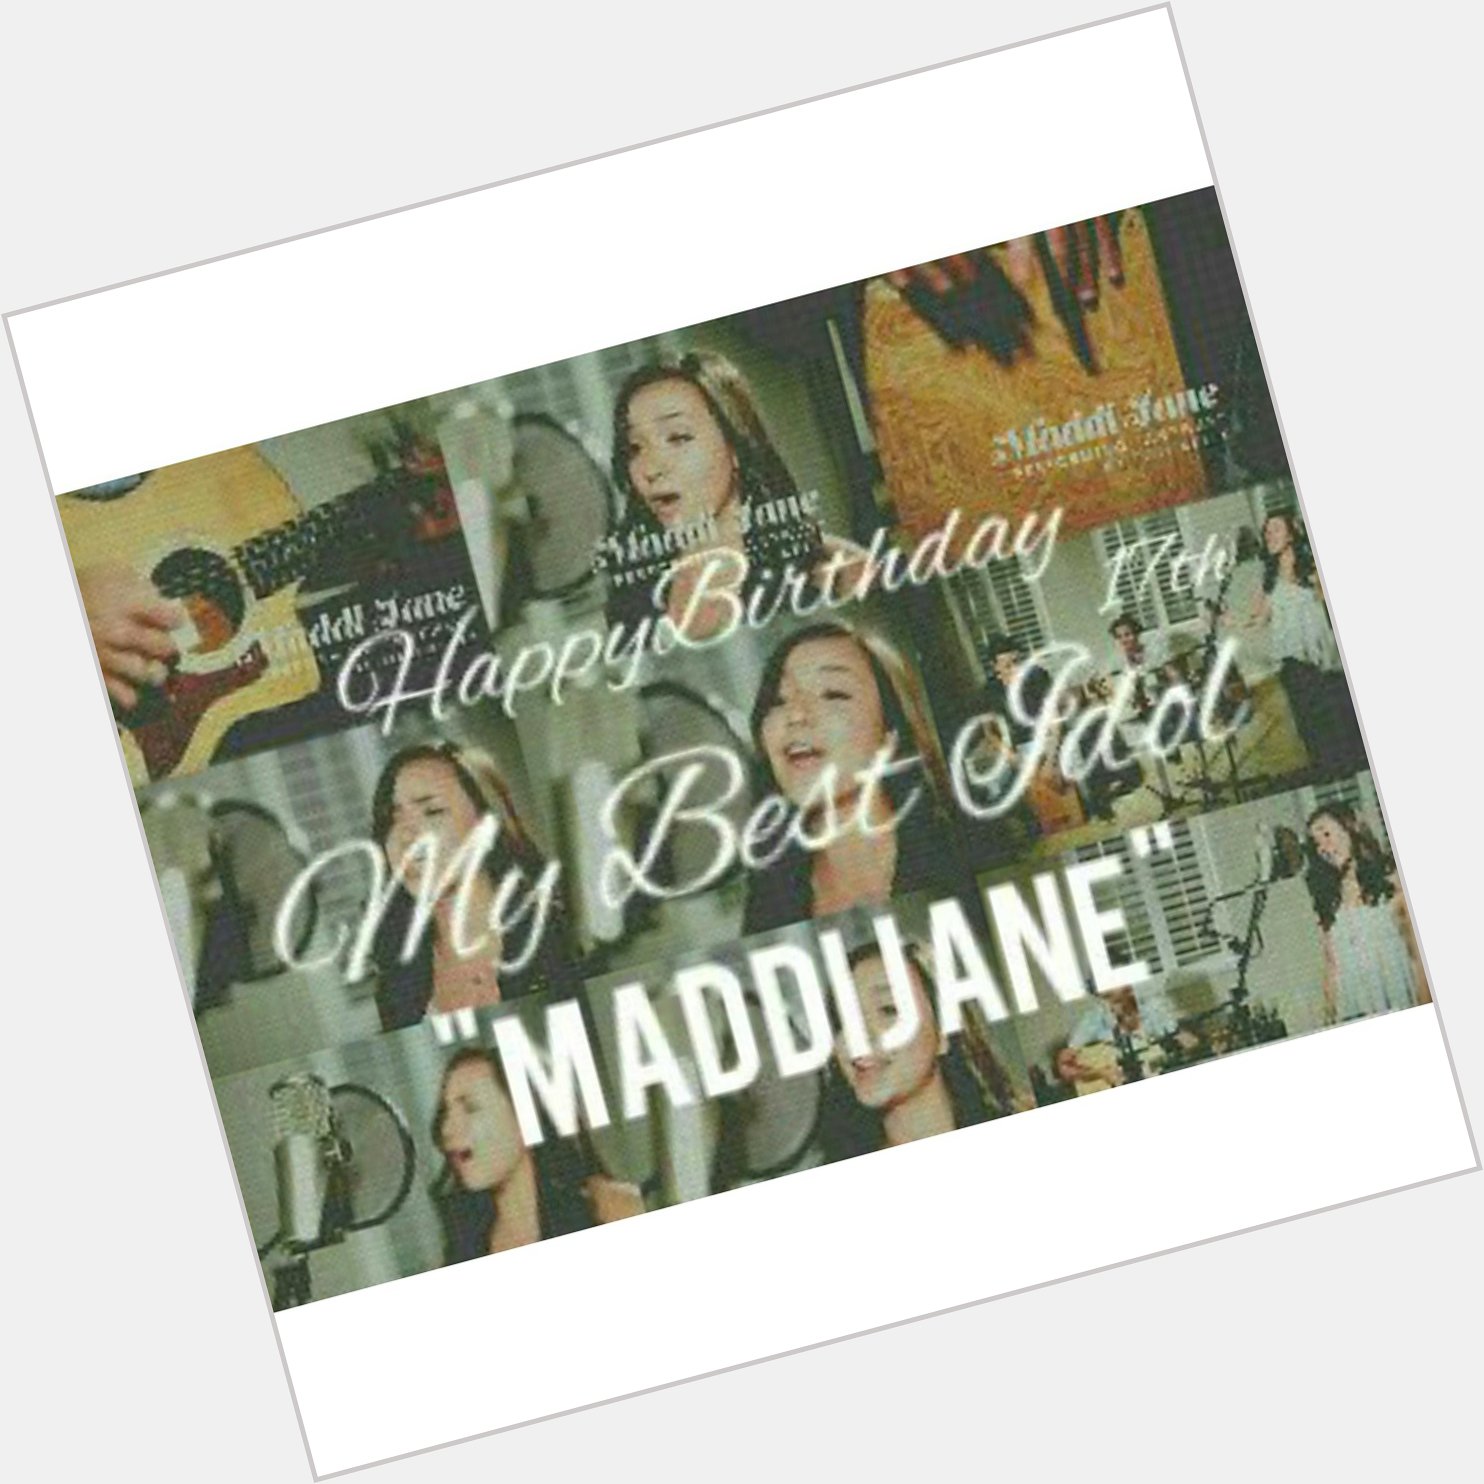 Happy Birthday Maddi Jane   Love youuuu!  